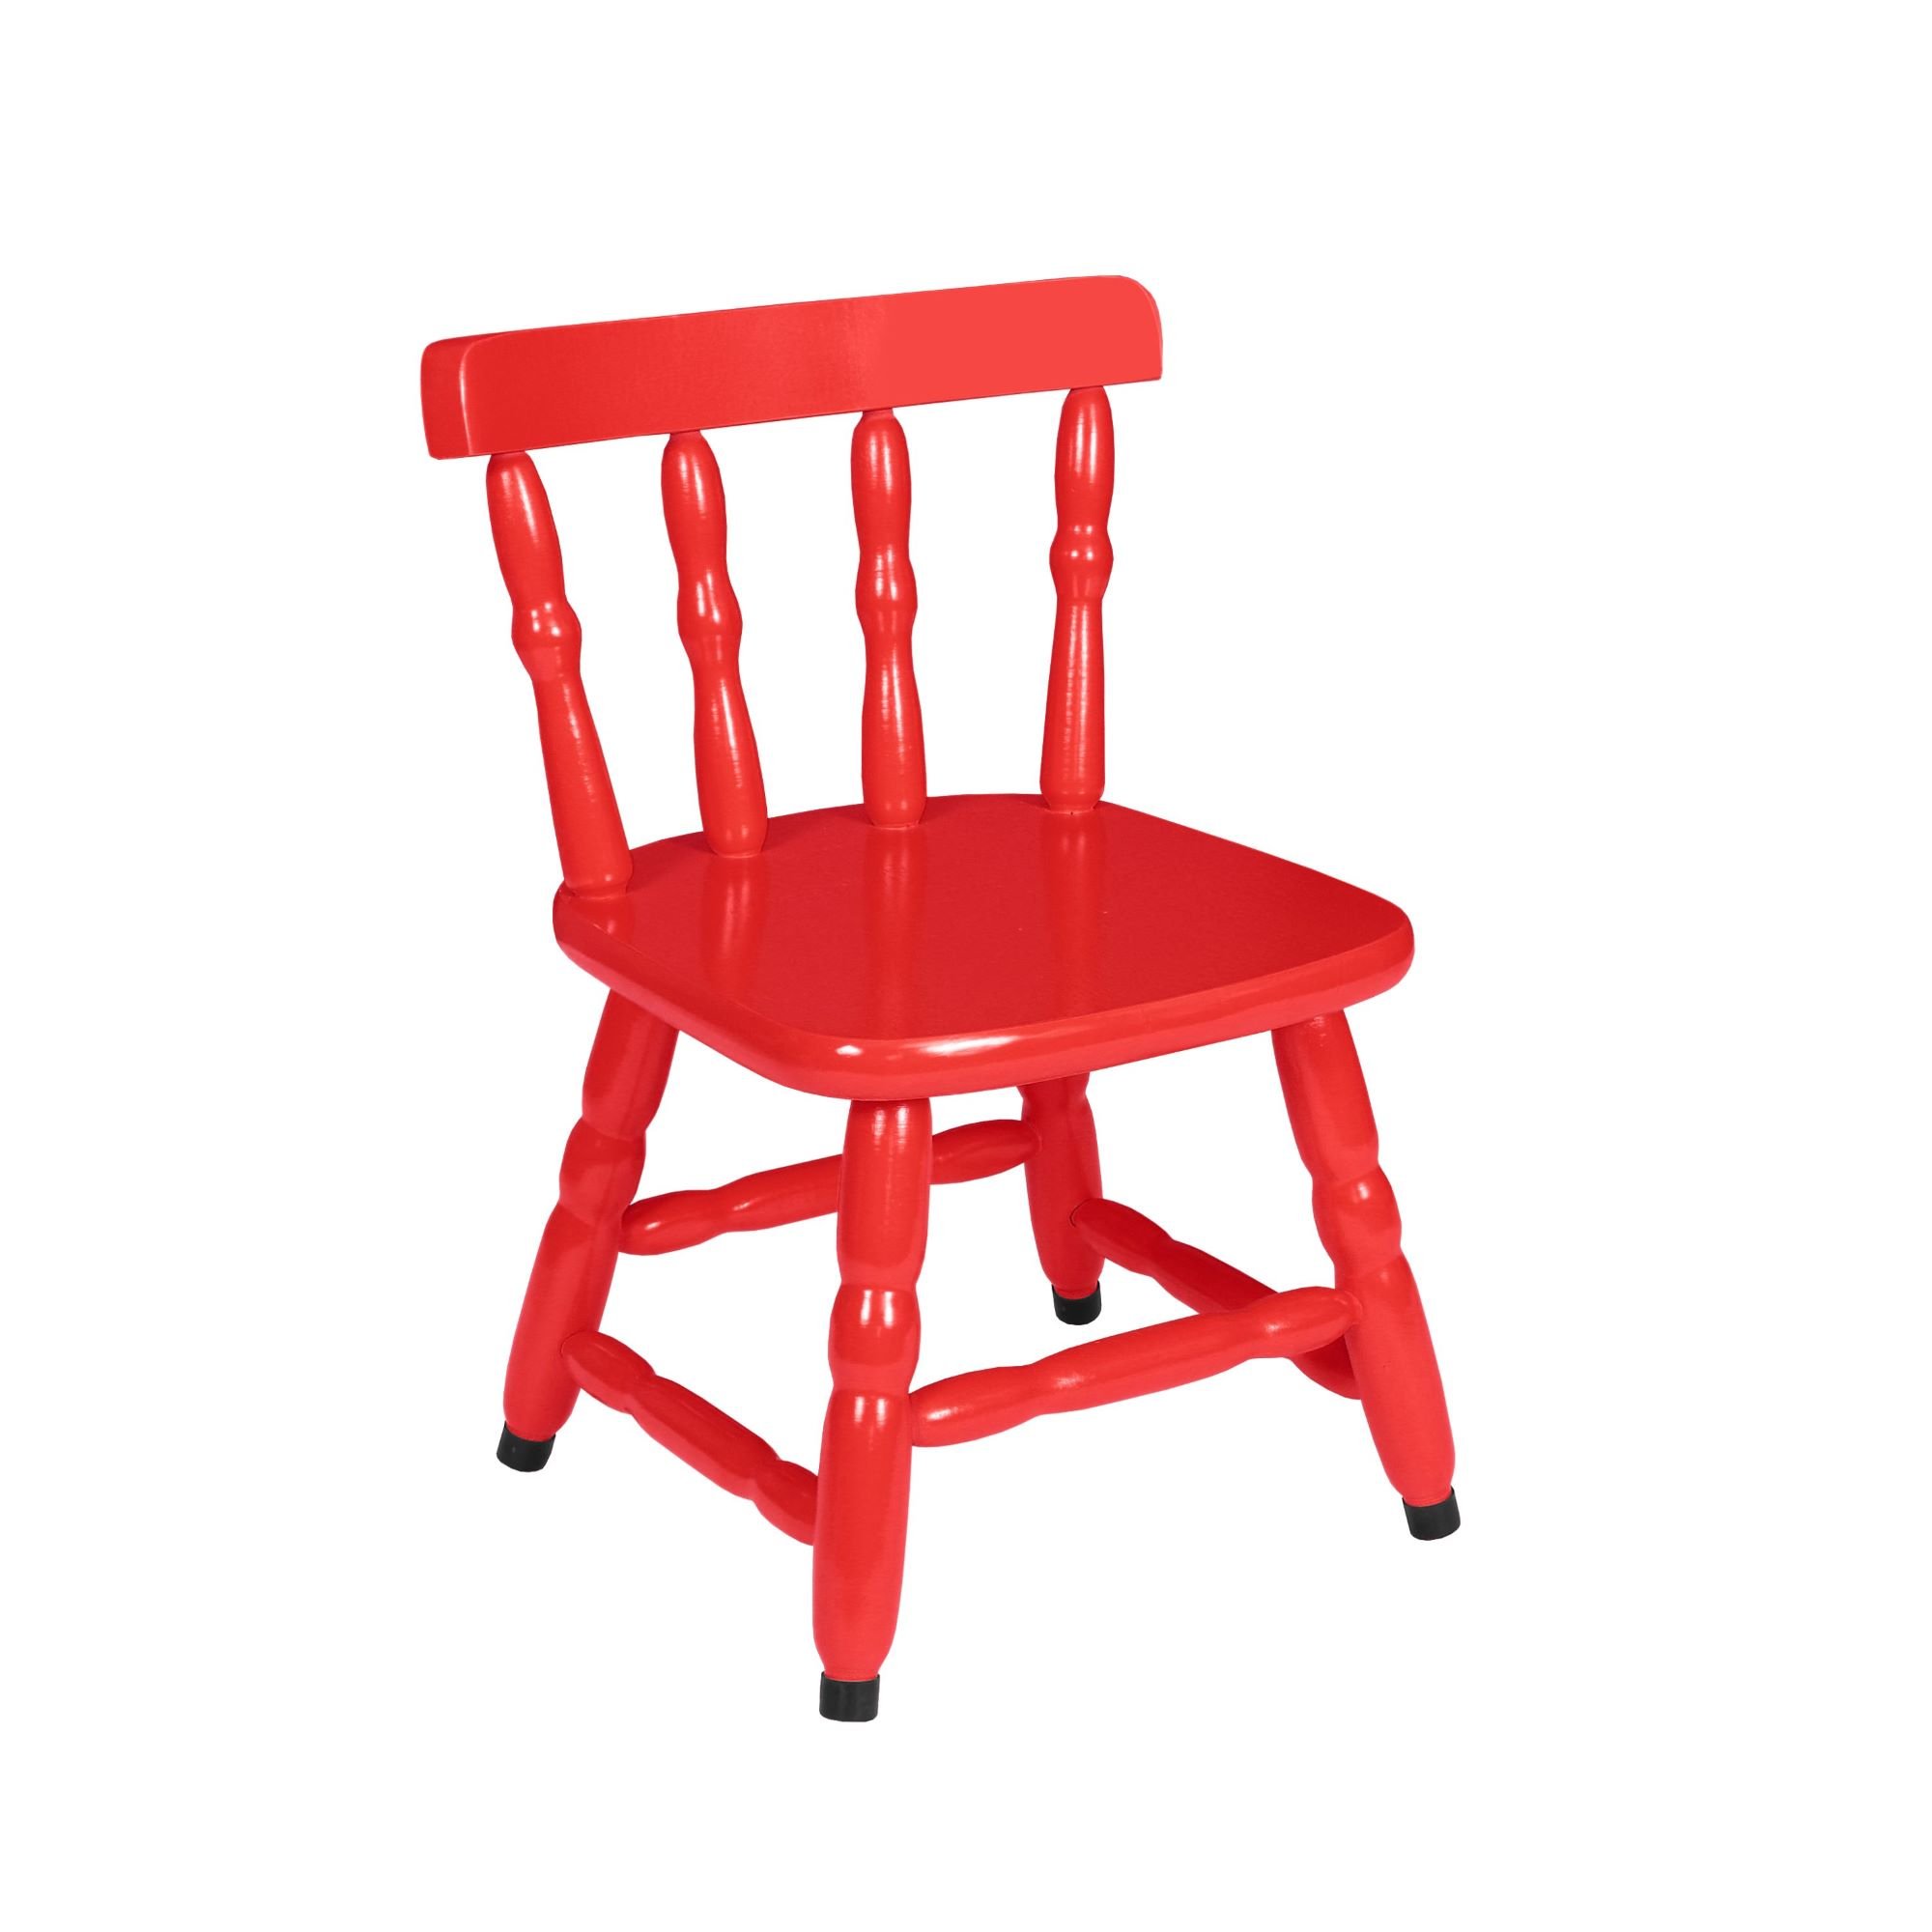 1 Cadeira Infantil Scholl Coloridas - Vermelho